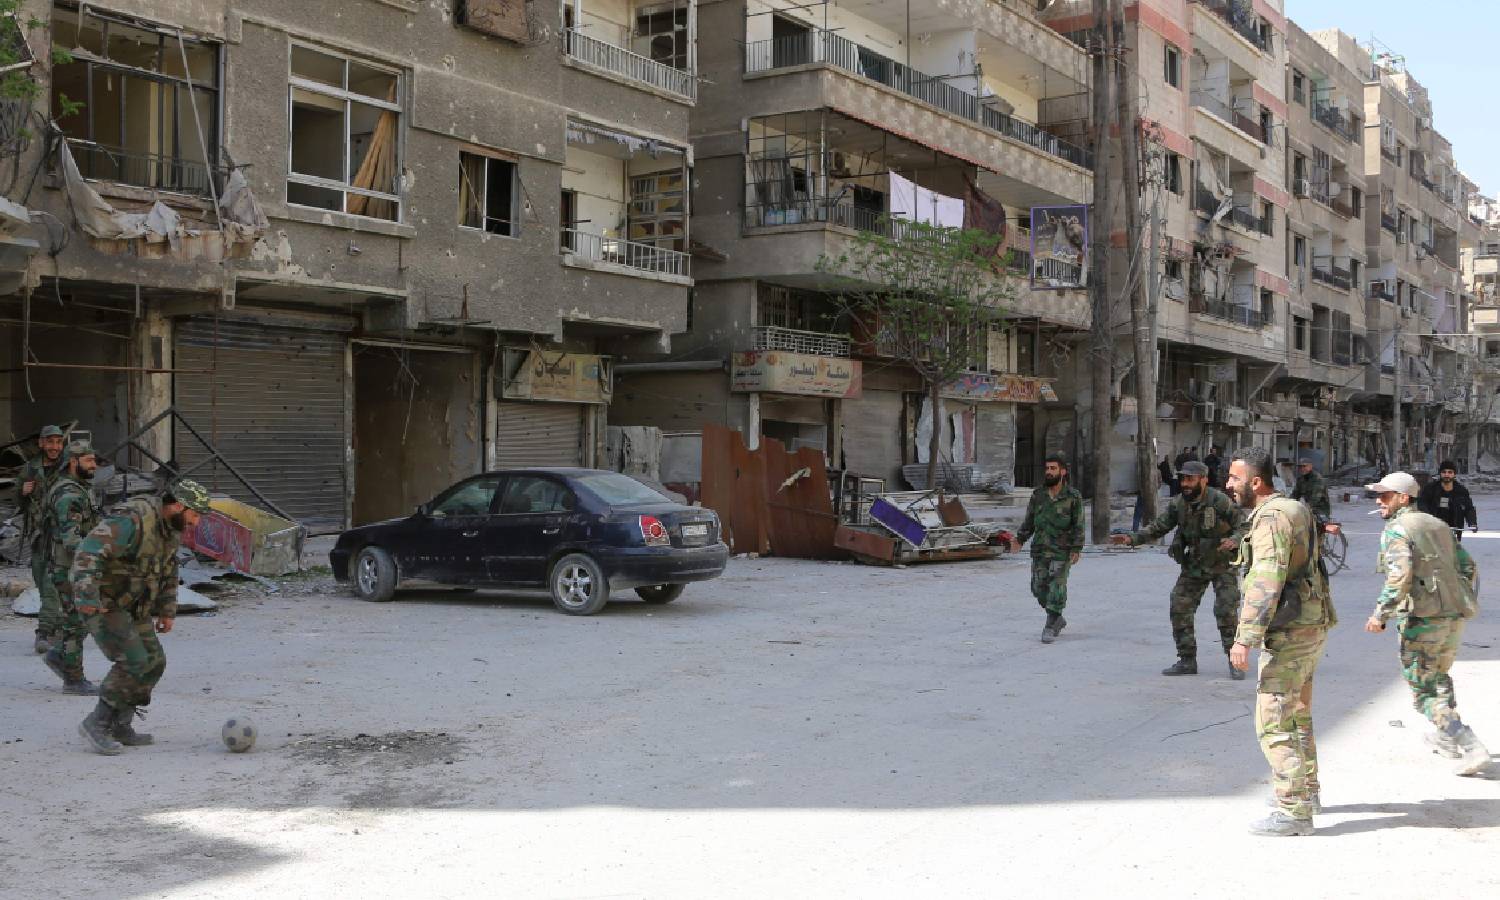 جنود في جيش النظام السوري يلعبون كرة القدم في شوارع مدينة عين ترما بريف دمشق بعد خروج المعارضة منها في آذار 2018 (سانا)